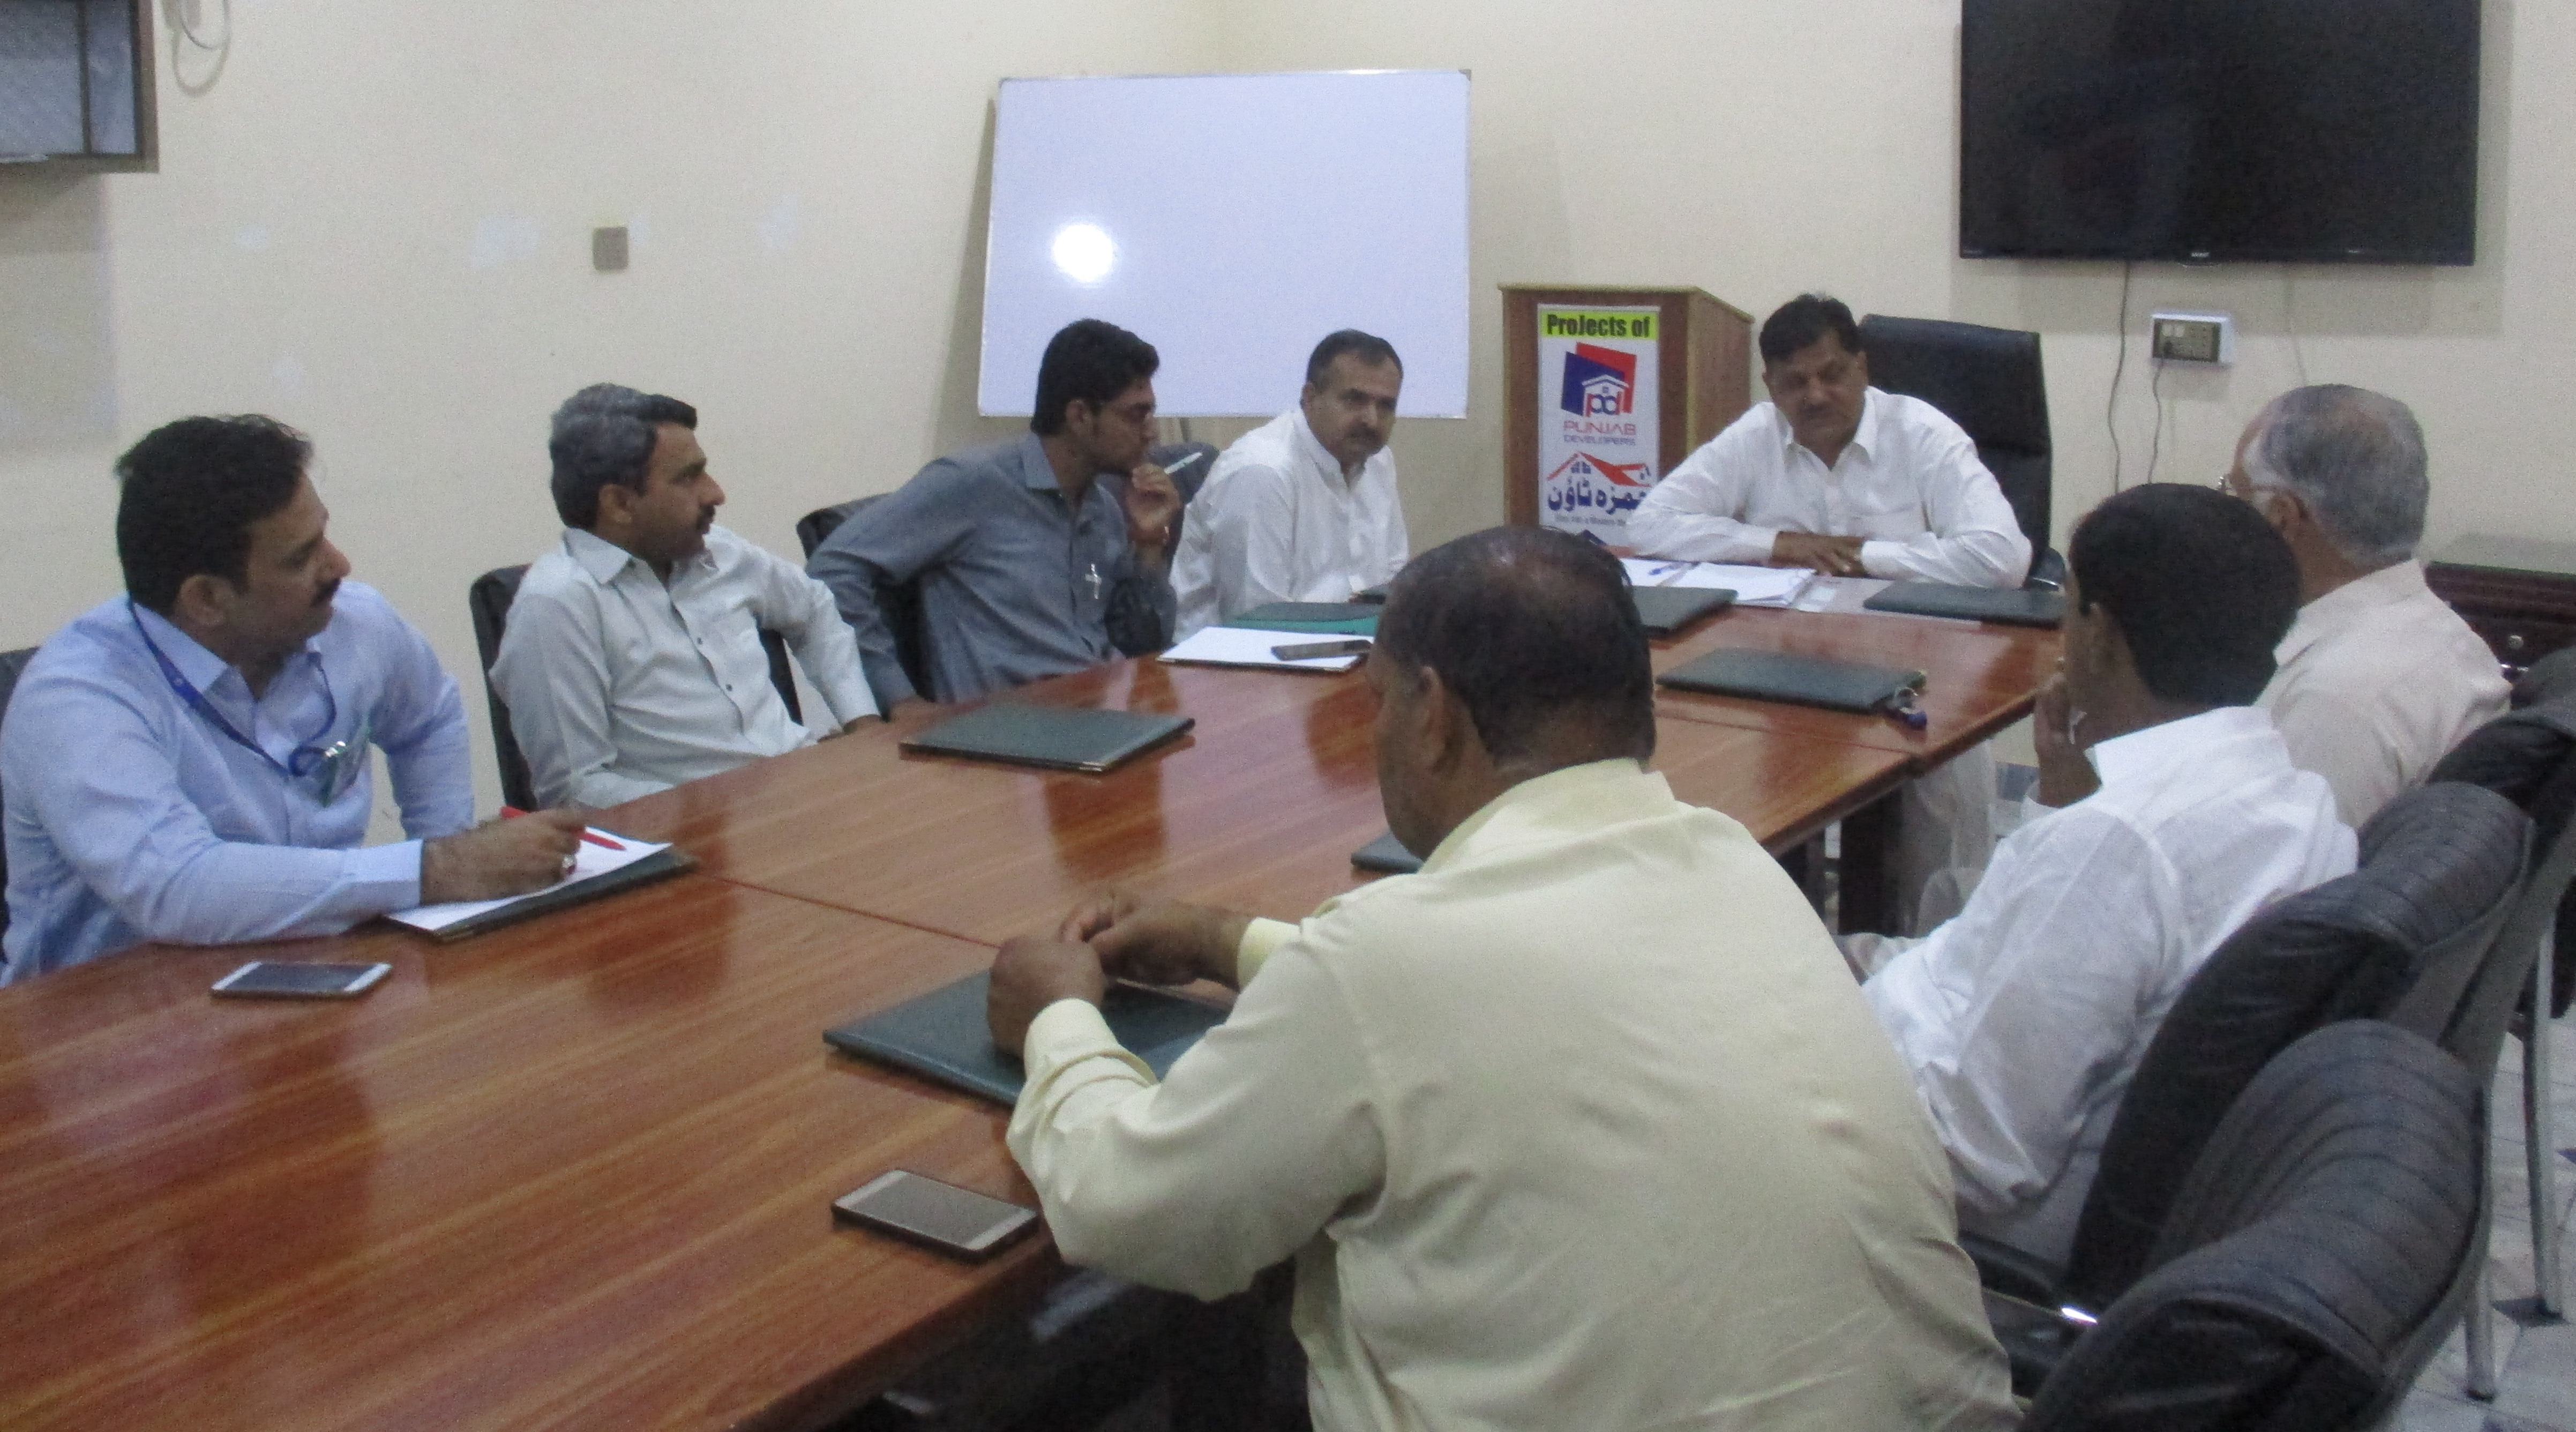 آفس پنجاب ڈویلپرز میں بورڈ آف ڈائریکٹر کی میٹنگ